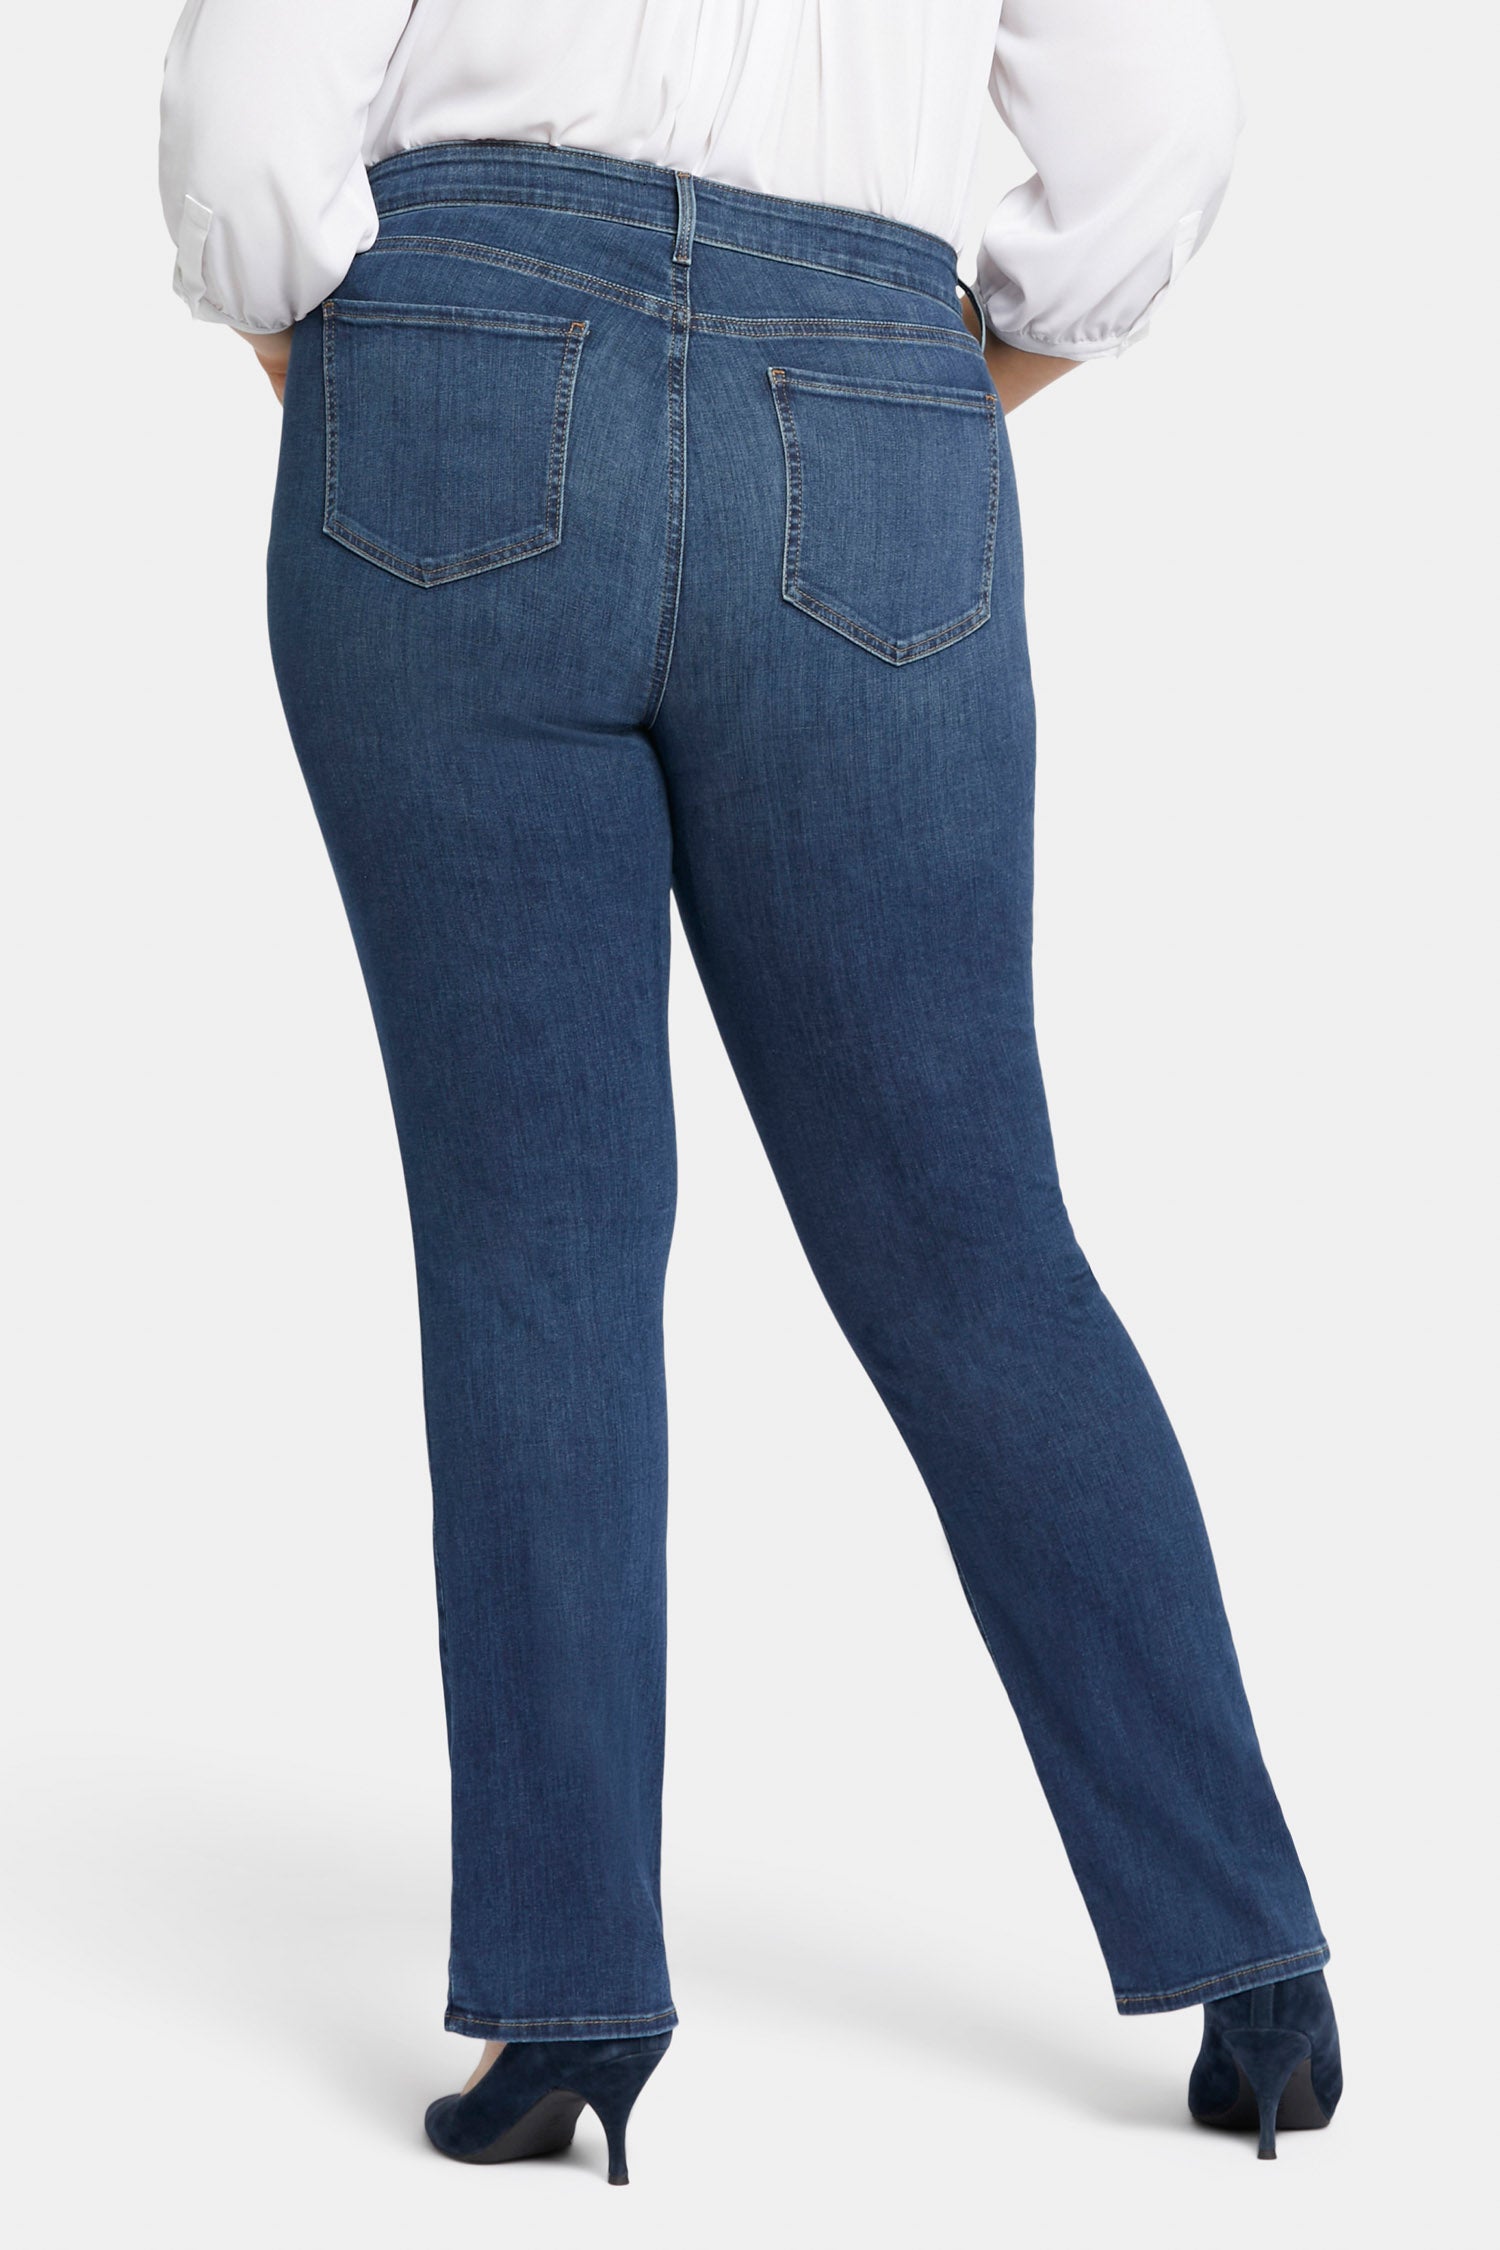 GINGER掲載商品 ジーンズ (取寄) Plus エヌワイディージェー Jeans